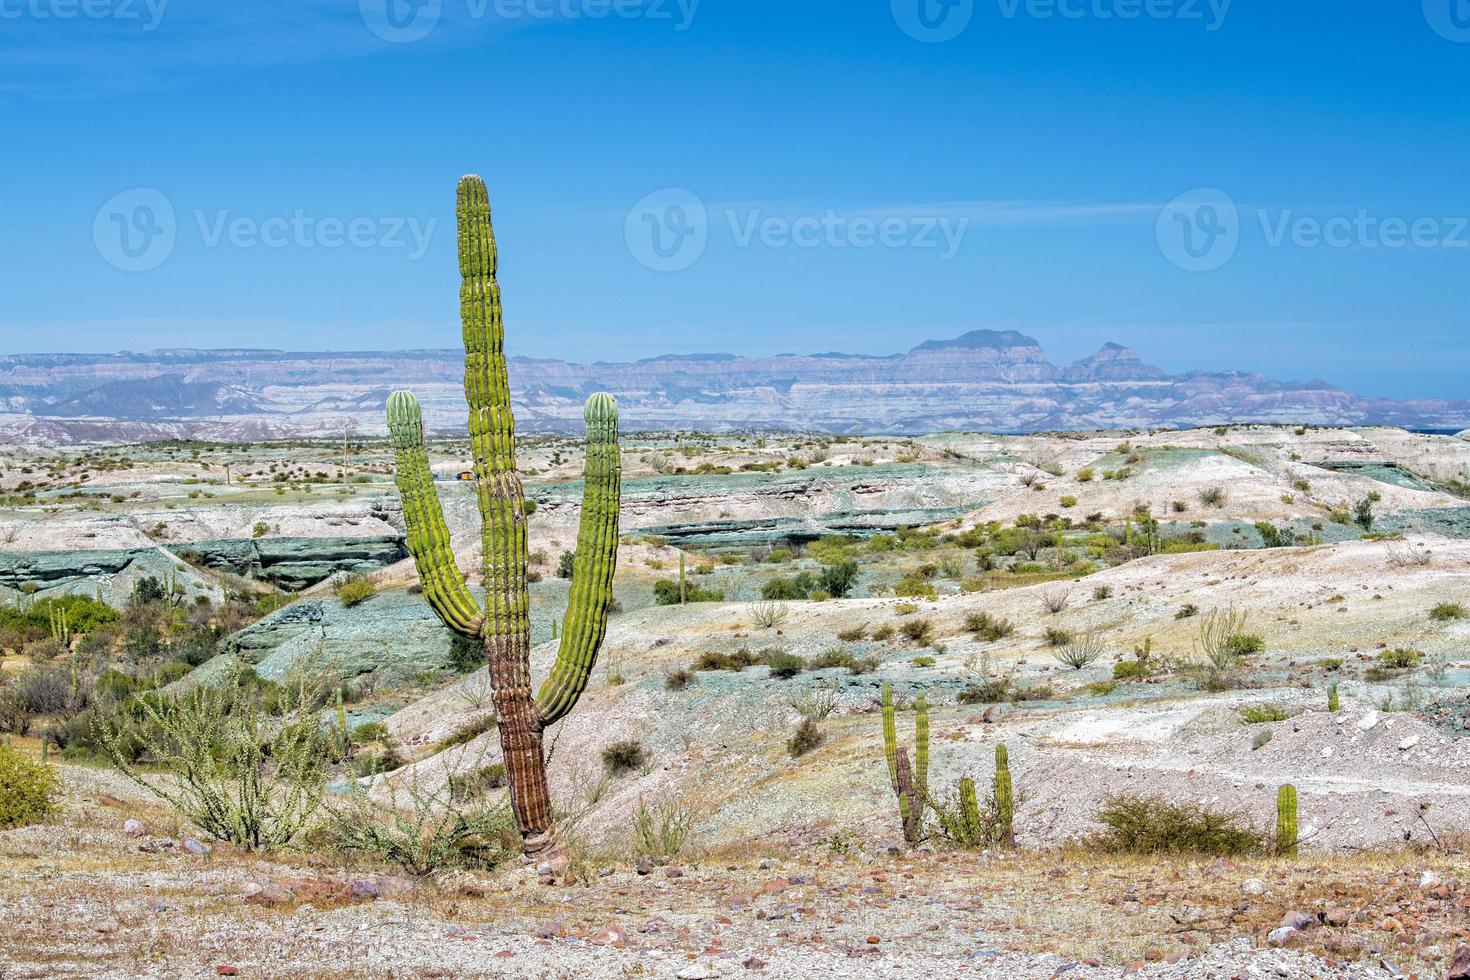 kalifornien jätte öken- kaktus stänga upp foto